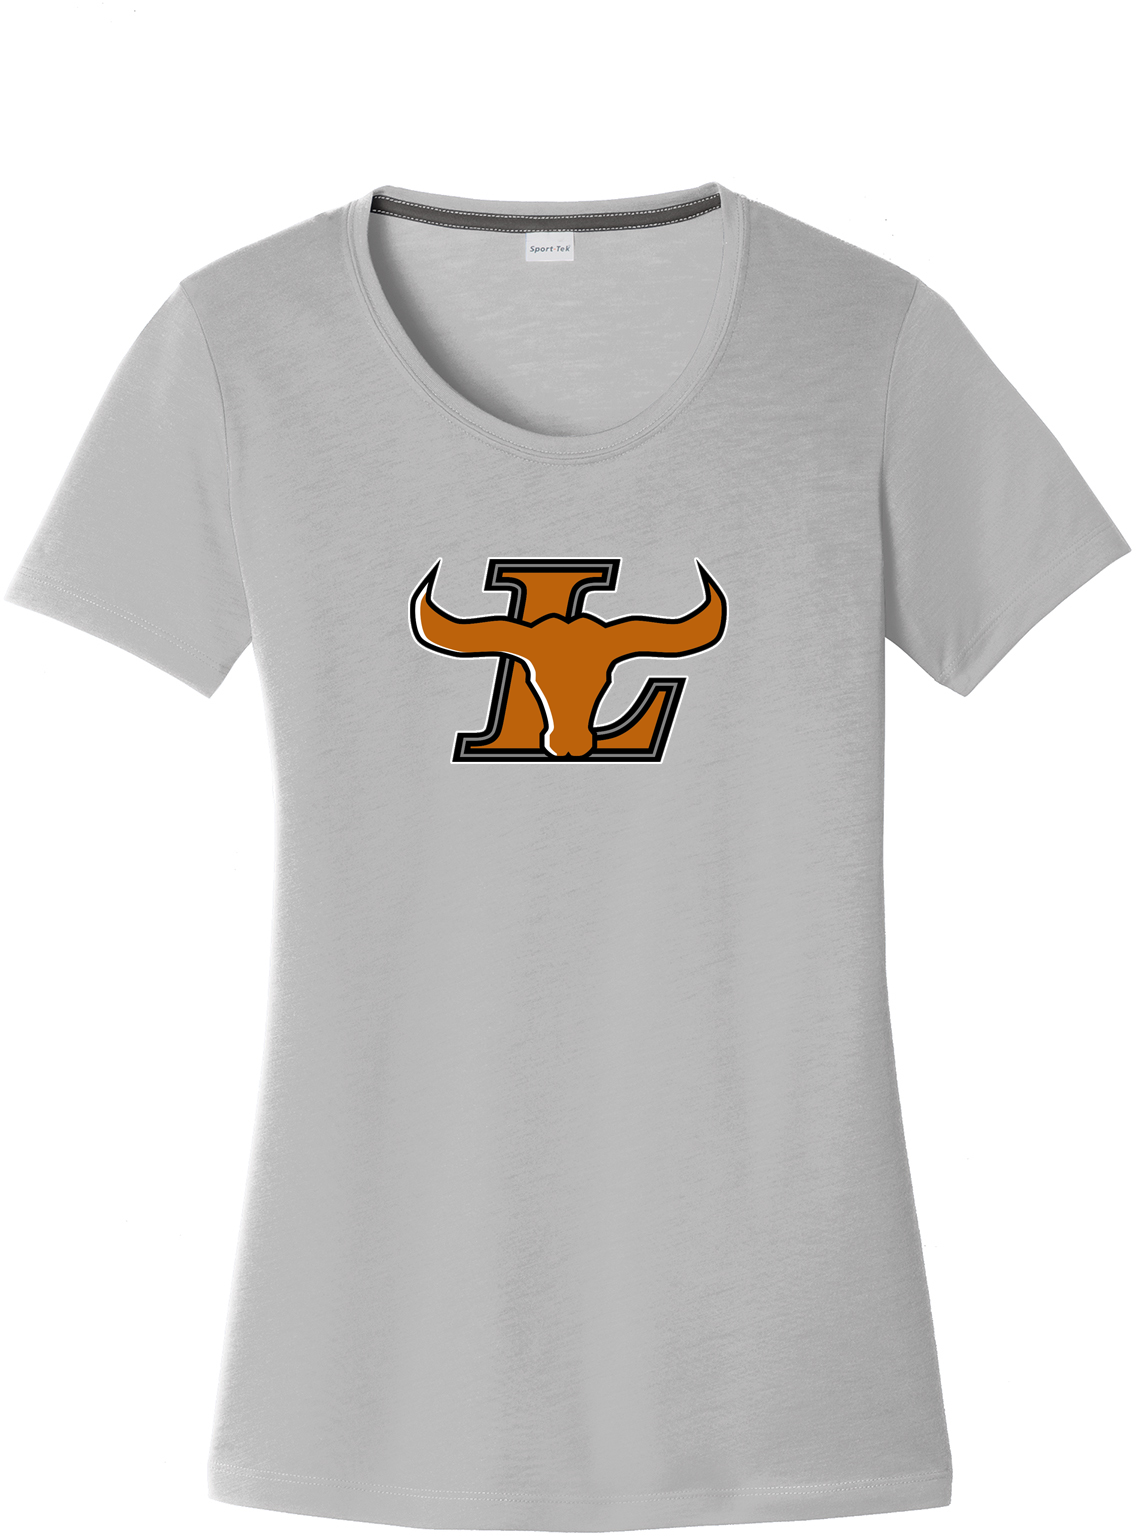 Lanier Baseball Women's CottonTouch Performance T-Shirt